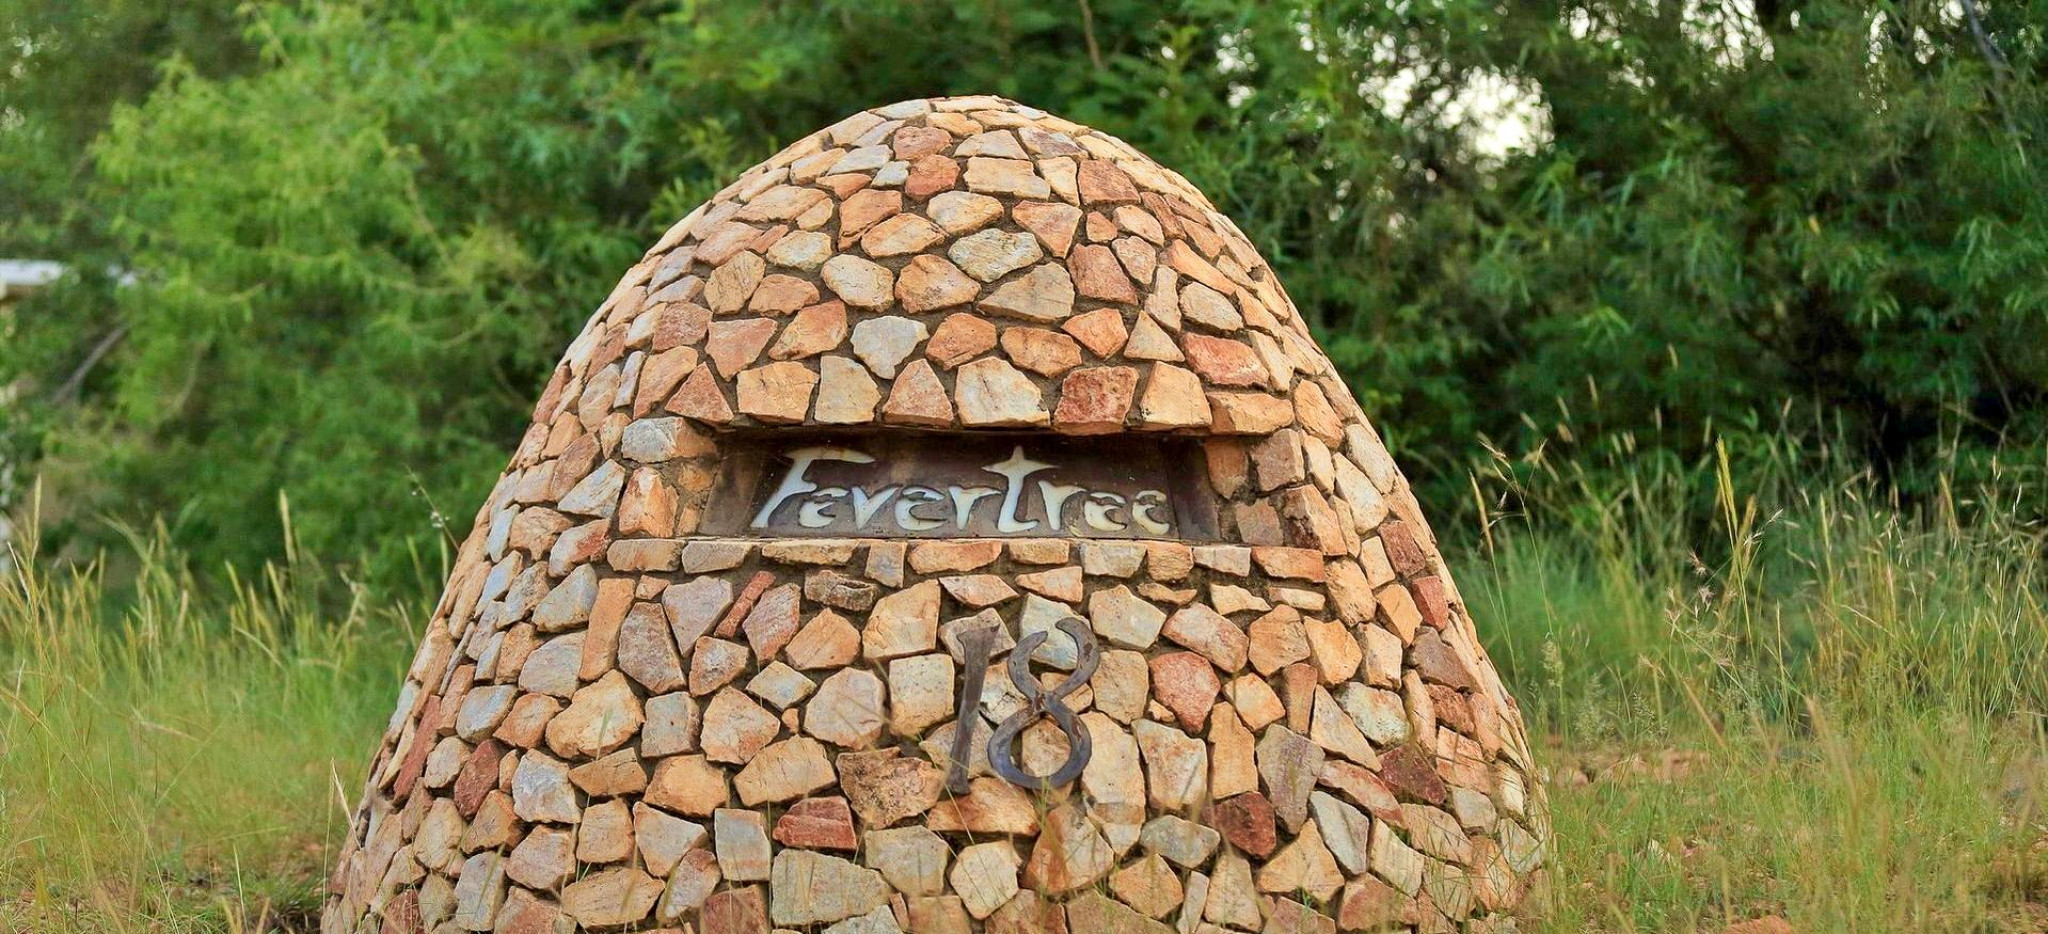 Die Hausnummer der Fevertree Lodge in Südafrika in deren Garten